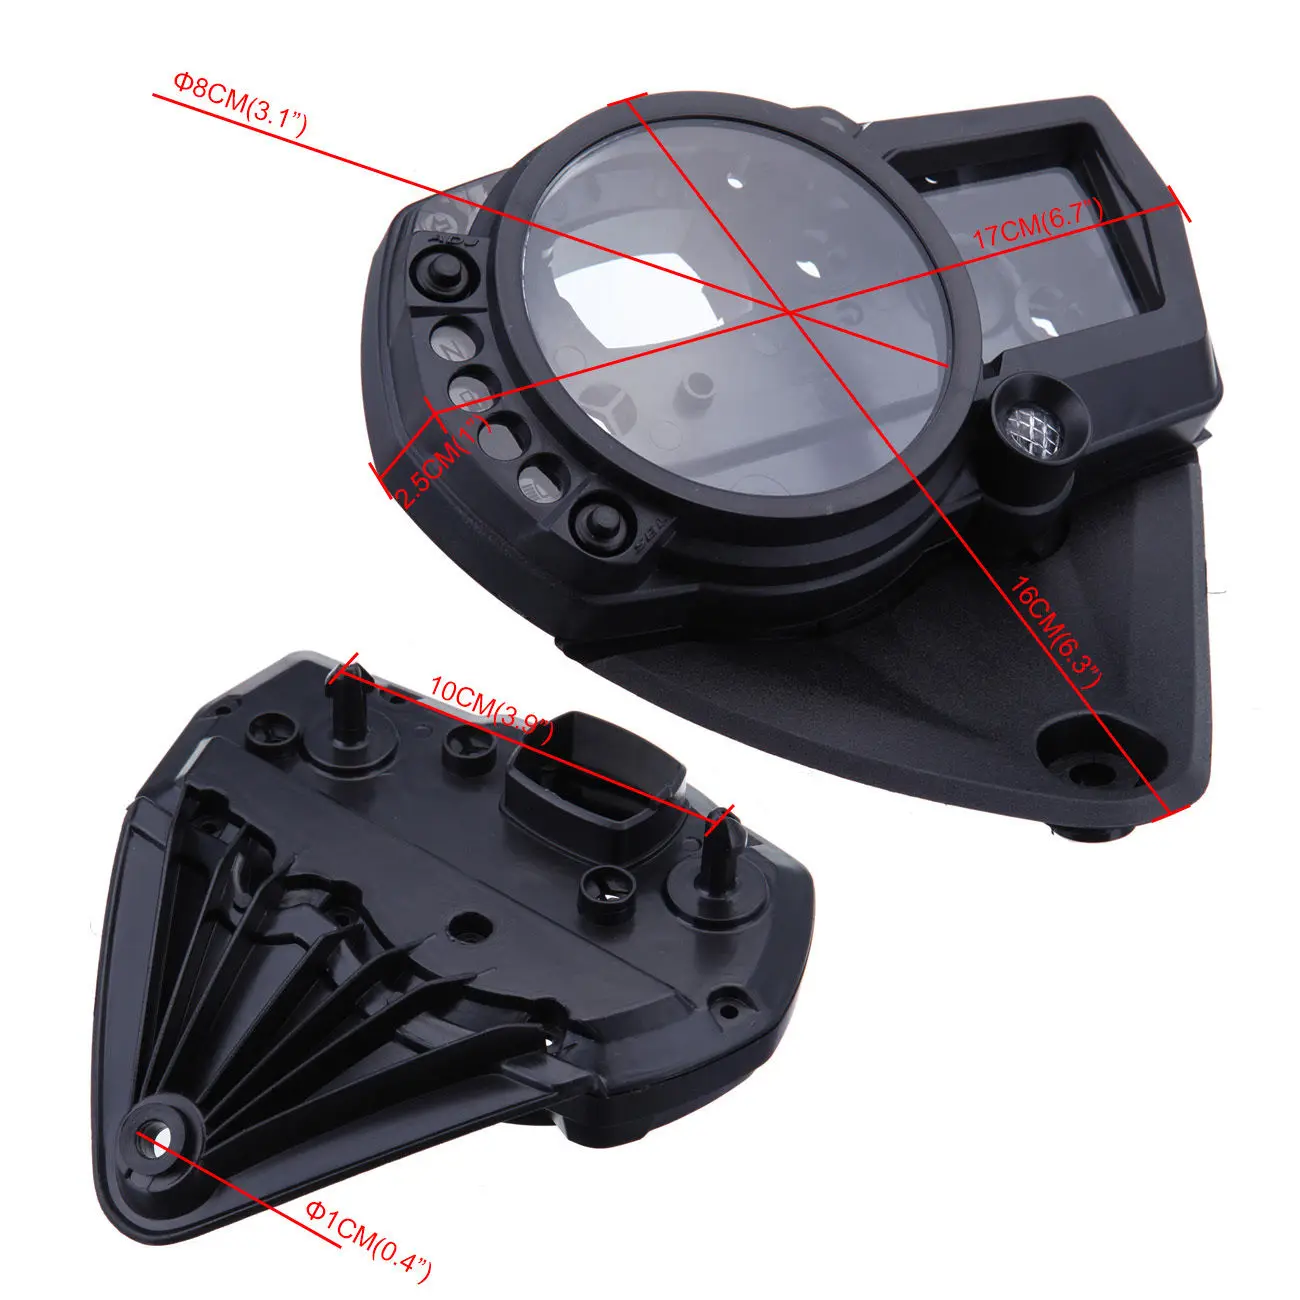 Yibid SpeedoMeter Gauge Case Cover Tachometer ABS Plastic Shell for Suzuki K5 GSXR1000 2005 2006 